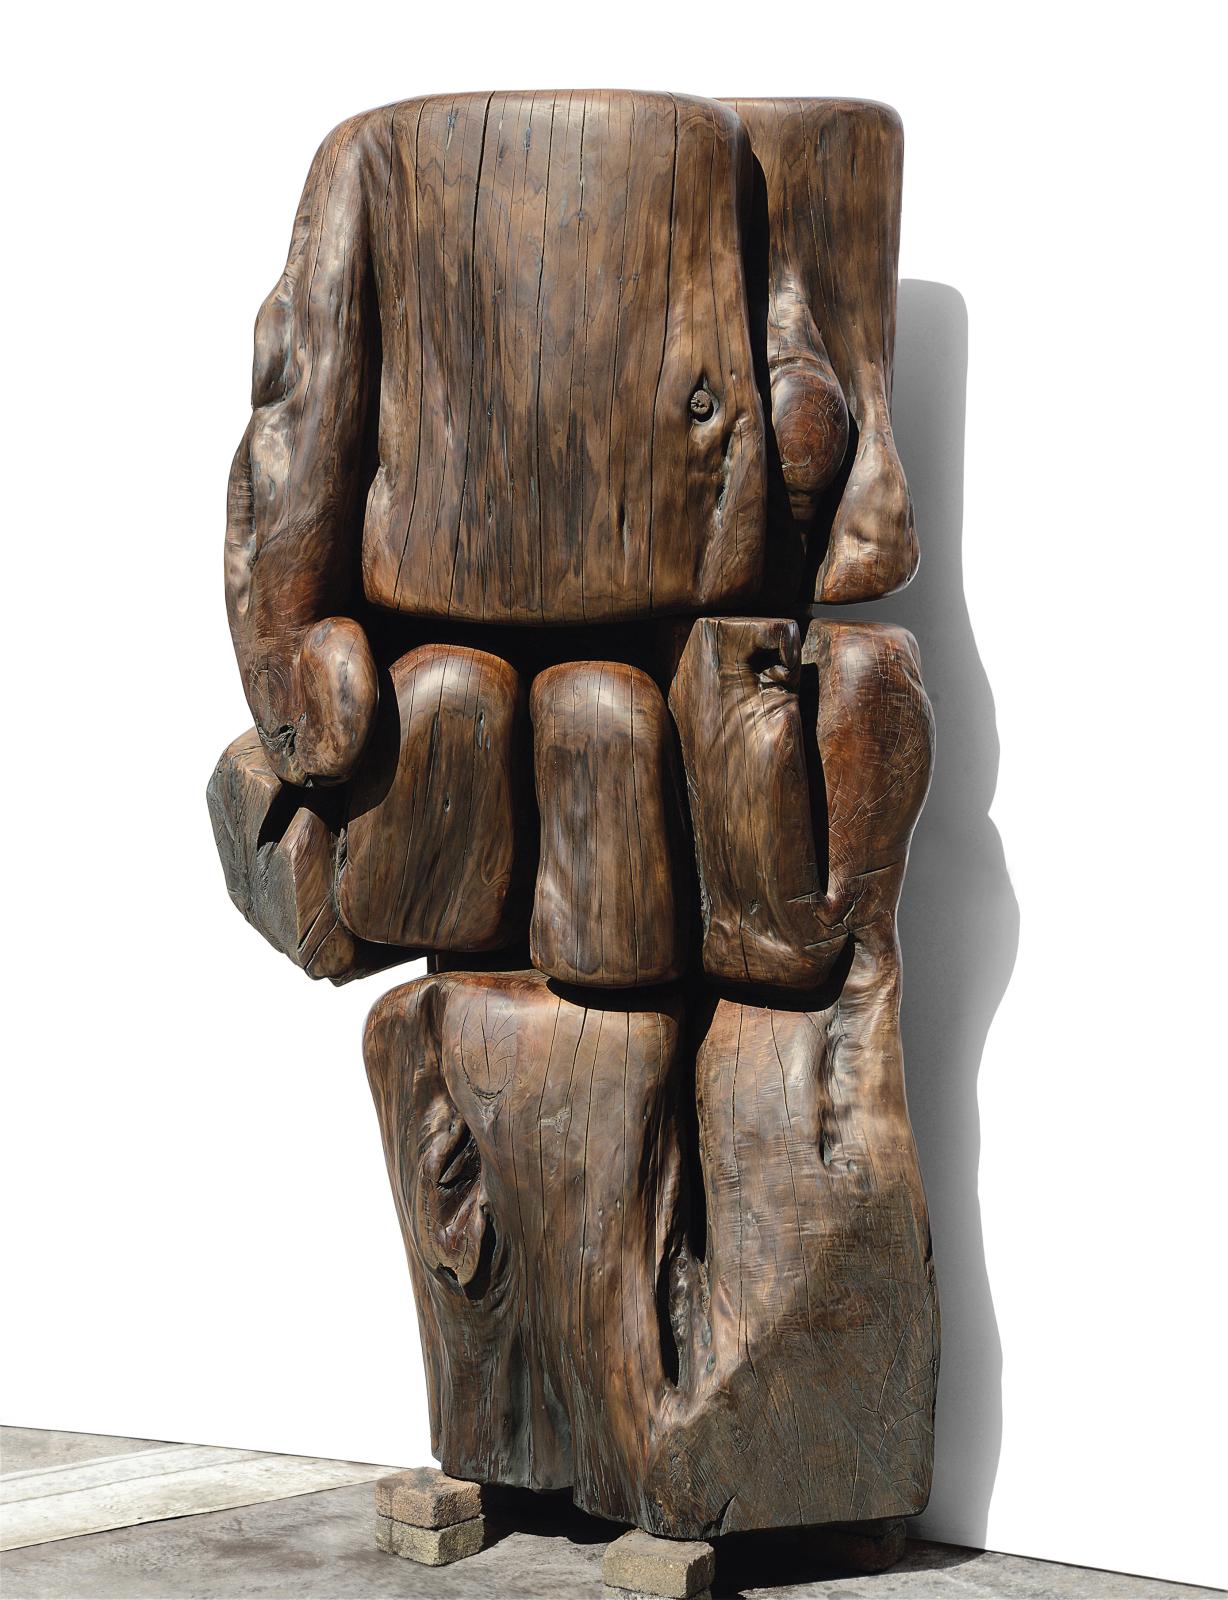 Si près deux cents ans, 2019, sculpture sur bois (cyprès), 210 x 110 x 50 cm. Courtesy de l’artiste et de la galerie Nathalie Obadia, Pari